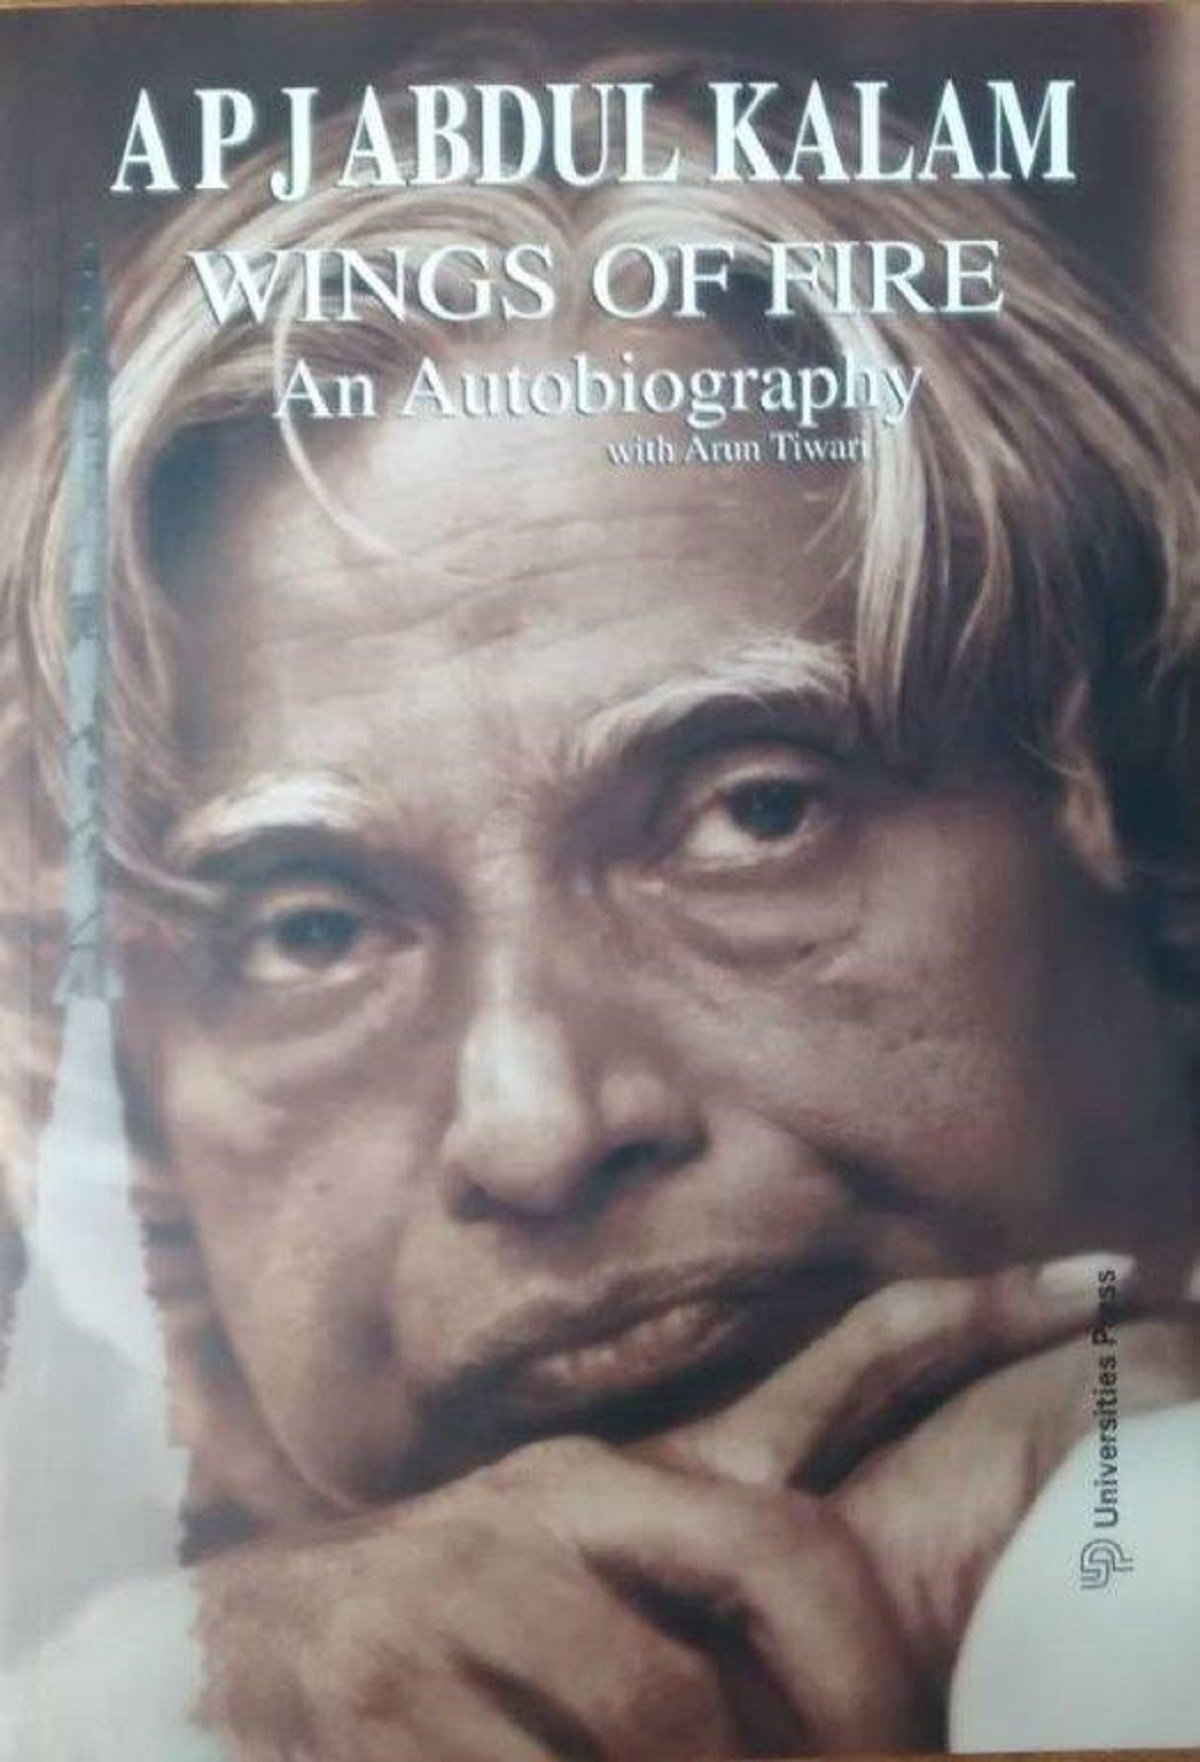 biography of apj abdul kalam book pdf